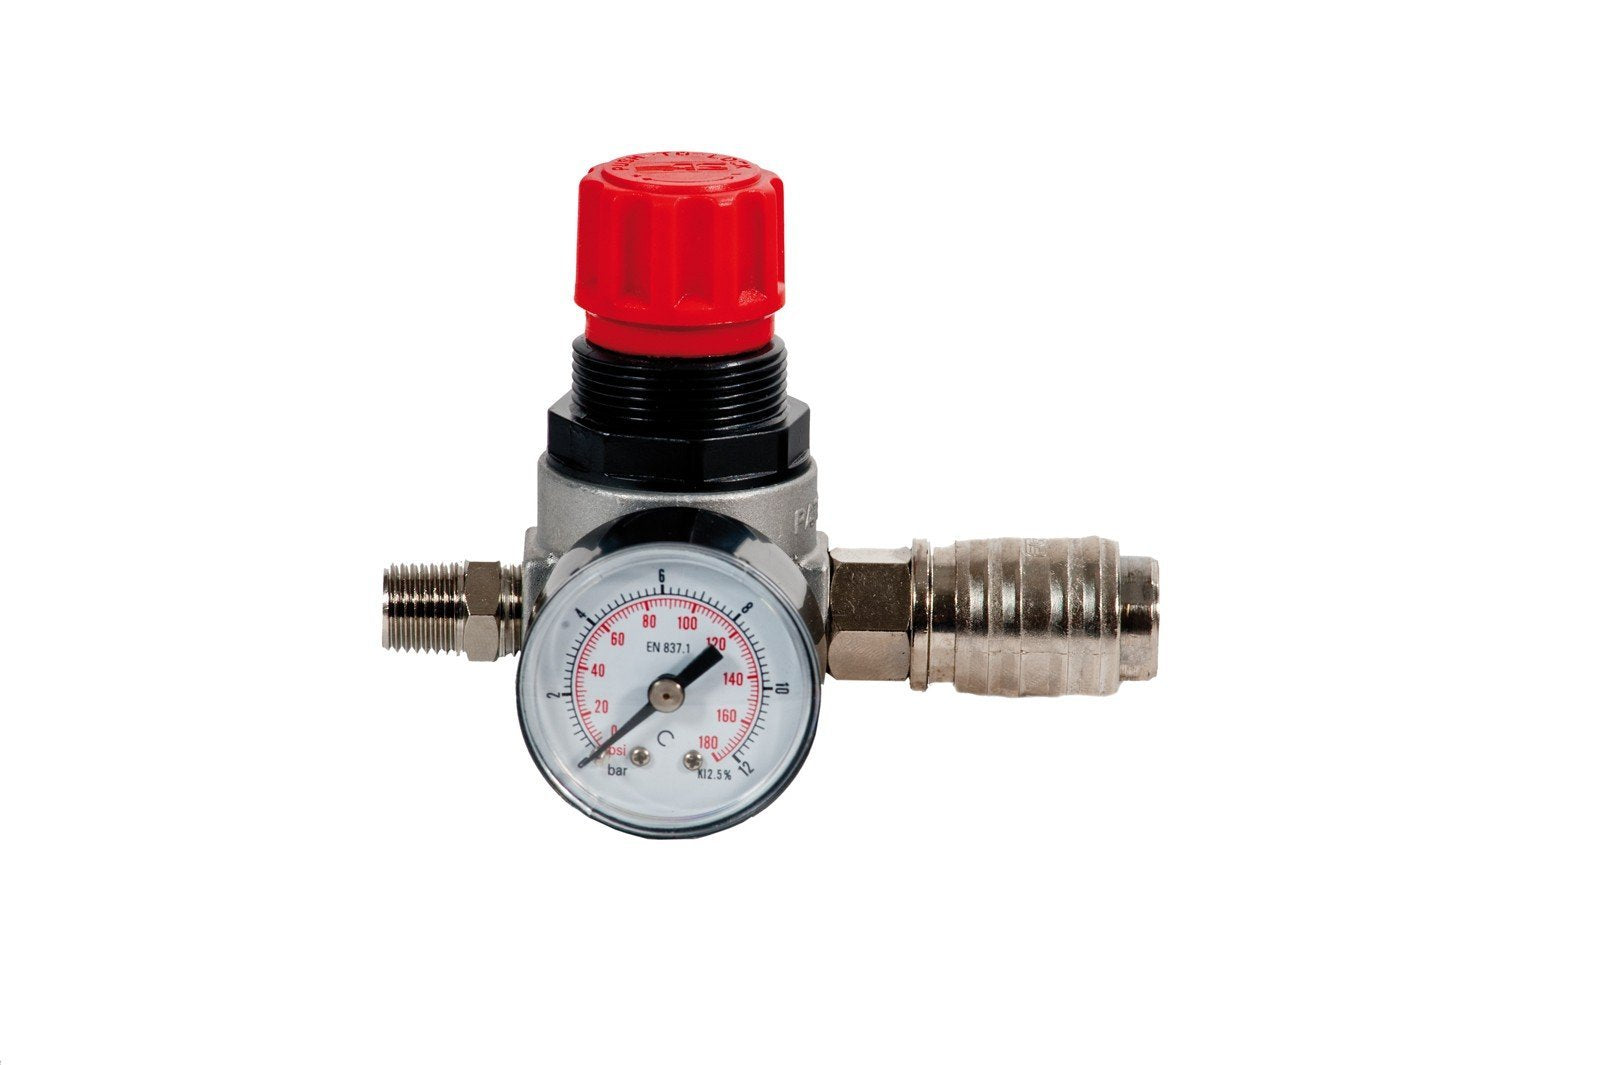 014-1045-000 - Pressure regulator with gauge